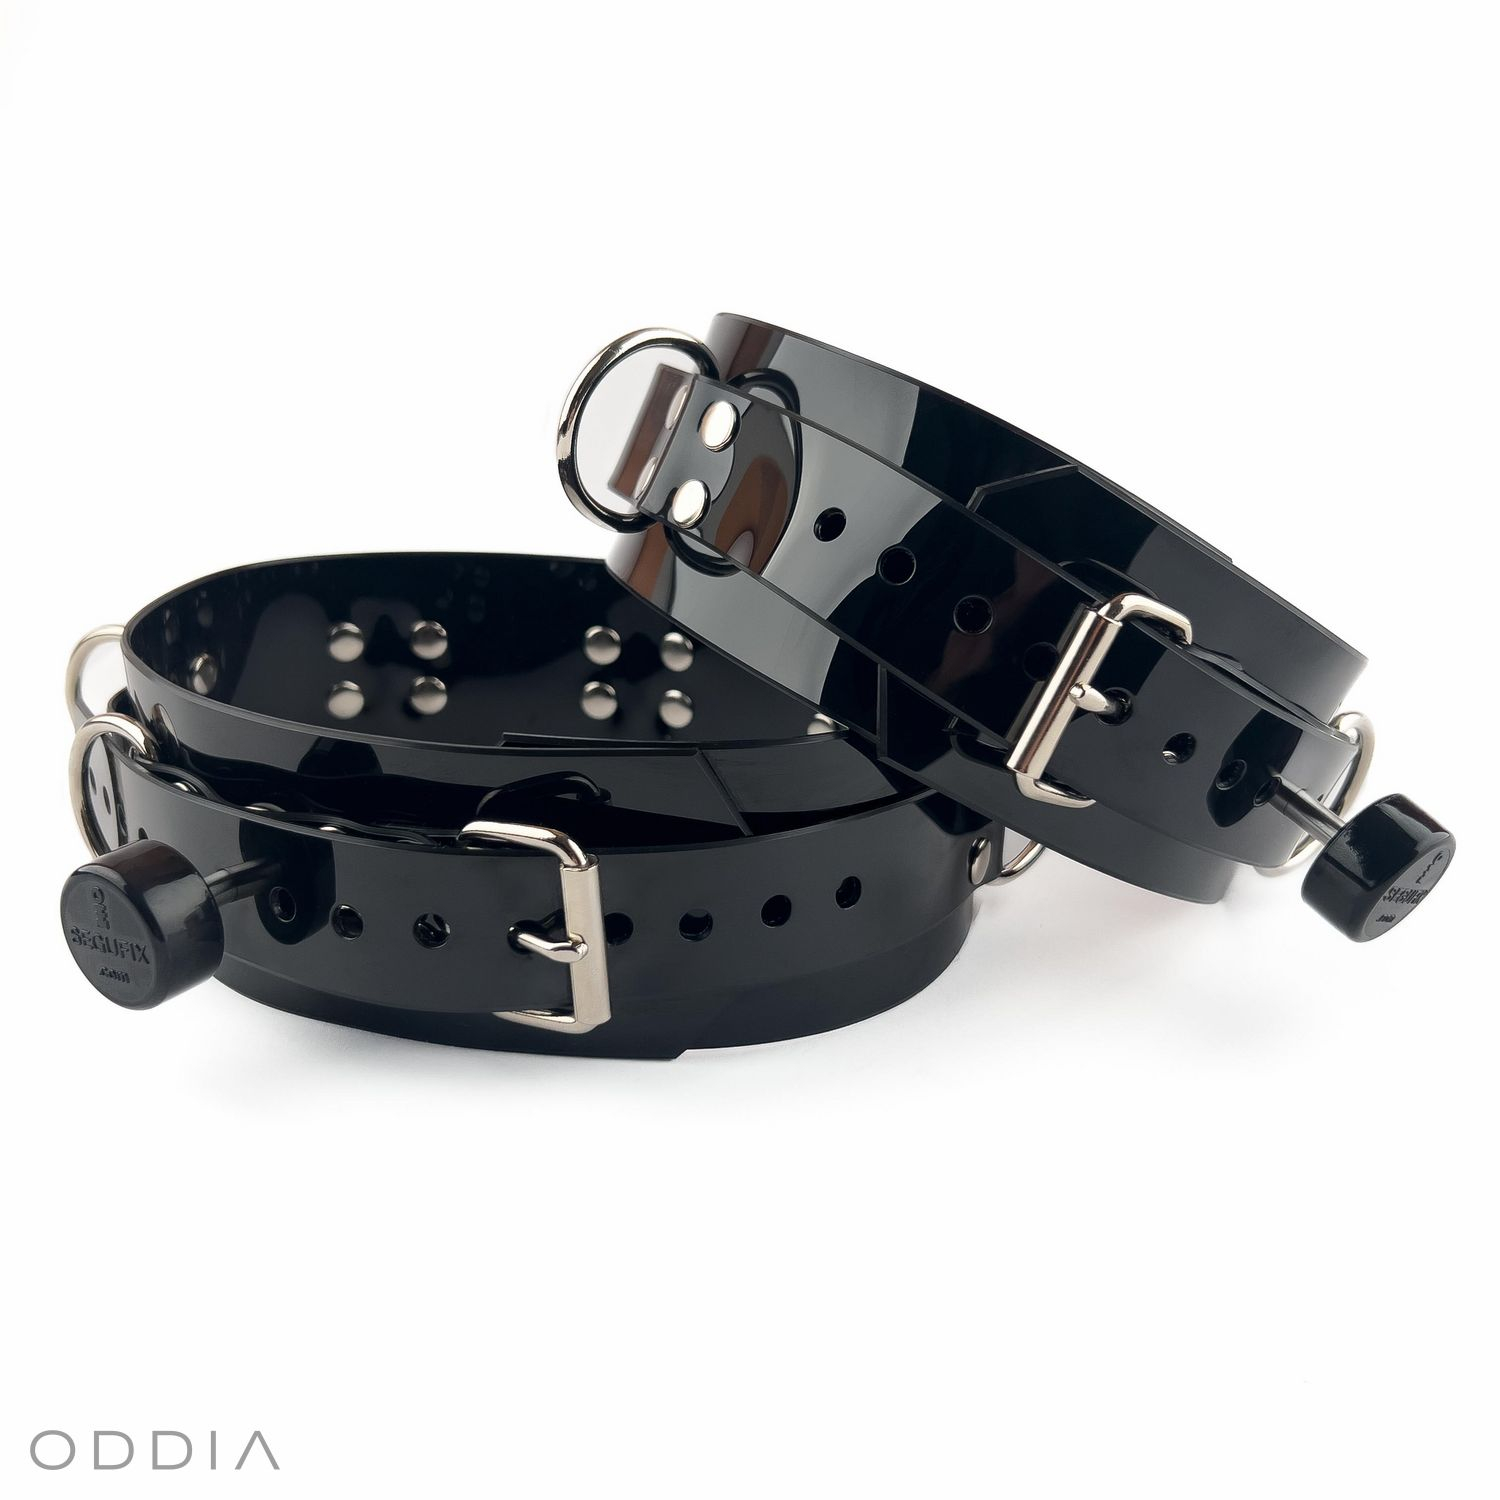 Čierne zamykateľné BDSM putá na stehná so Segufix magnetickými zámkami a kvalitnou kováčskou prácou vo striebornej farbe.